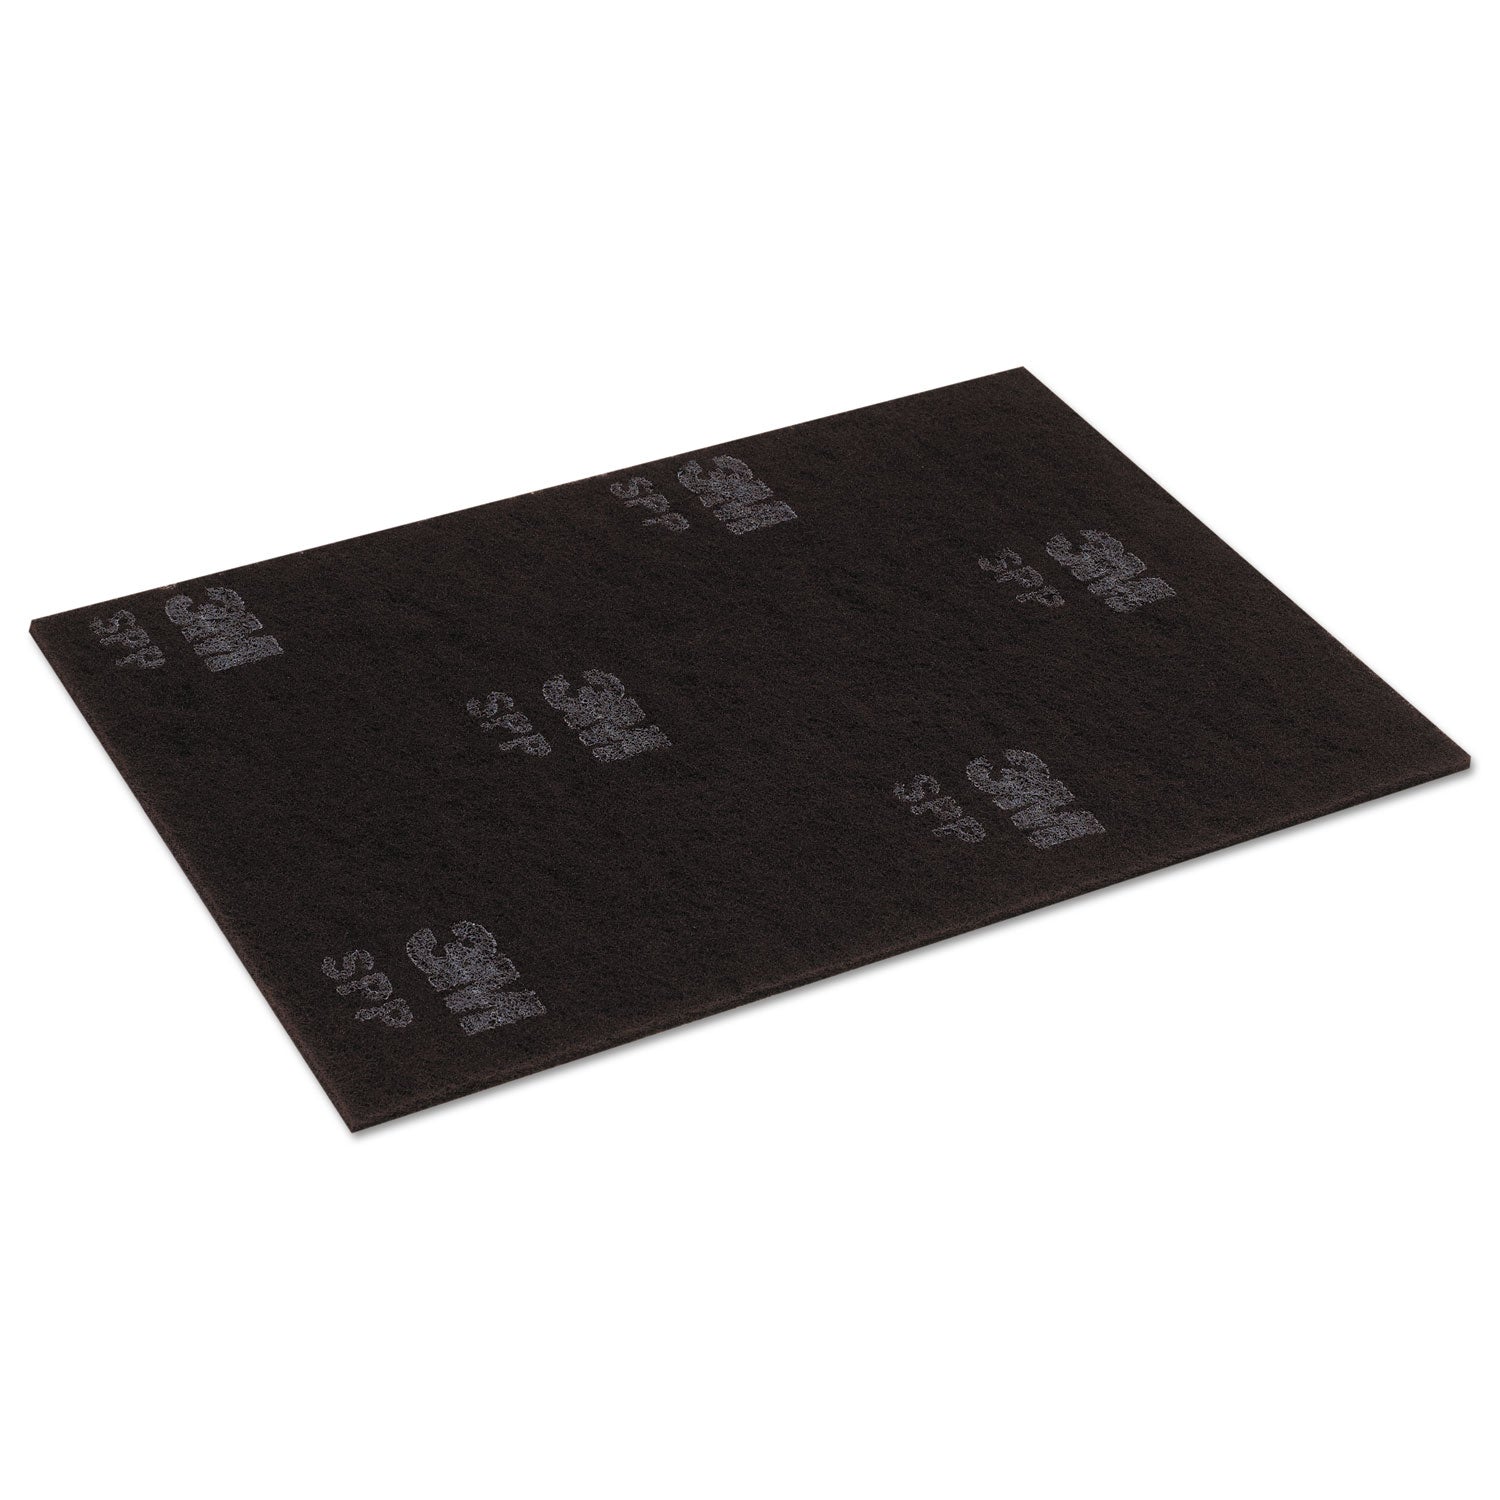 surface-preparation-pad-sheets-14-x-28-maroon-10-carton_mmm02498 - 1